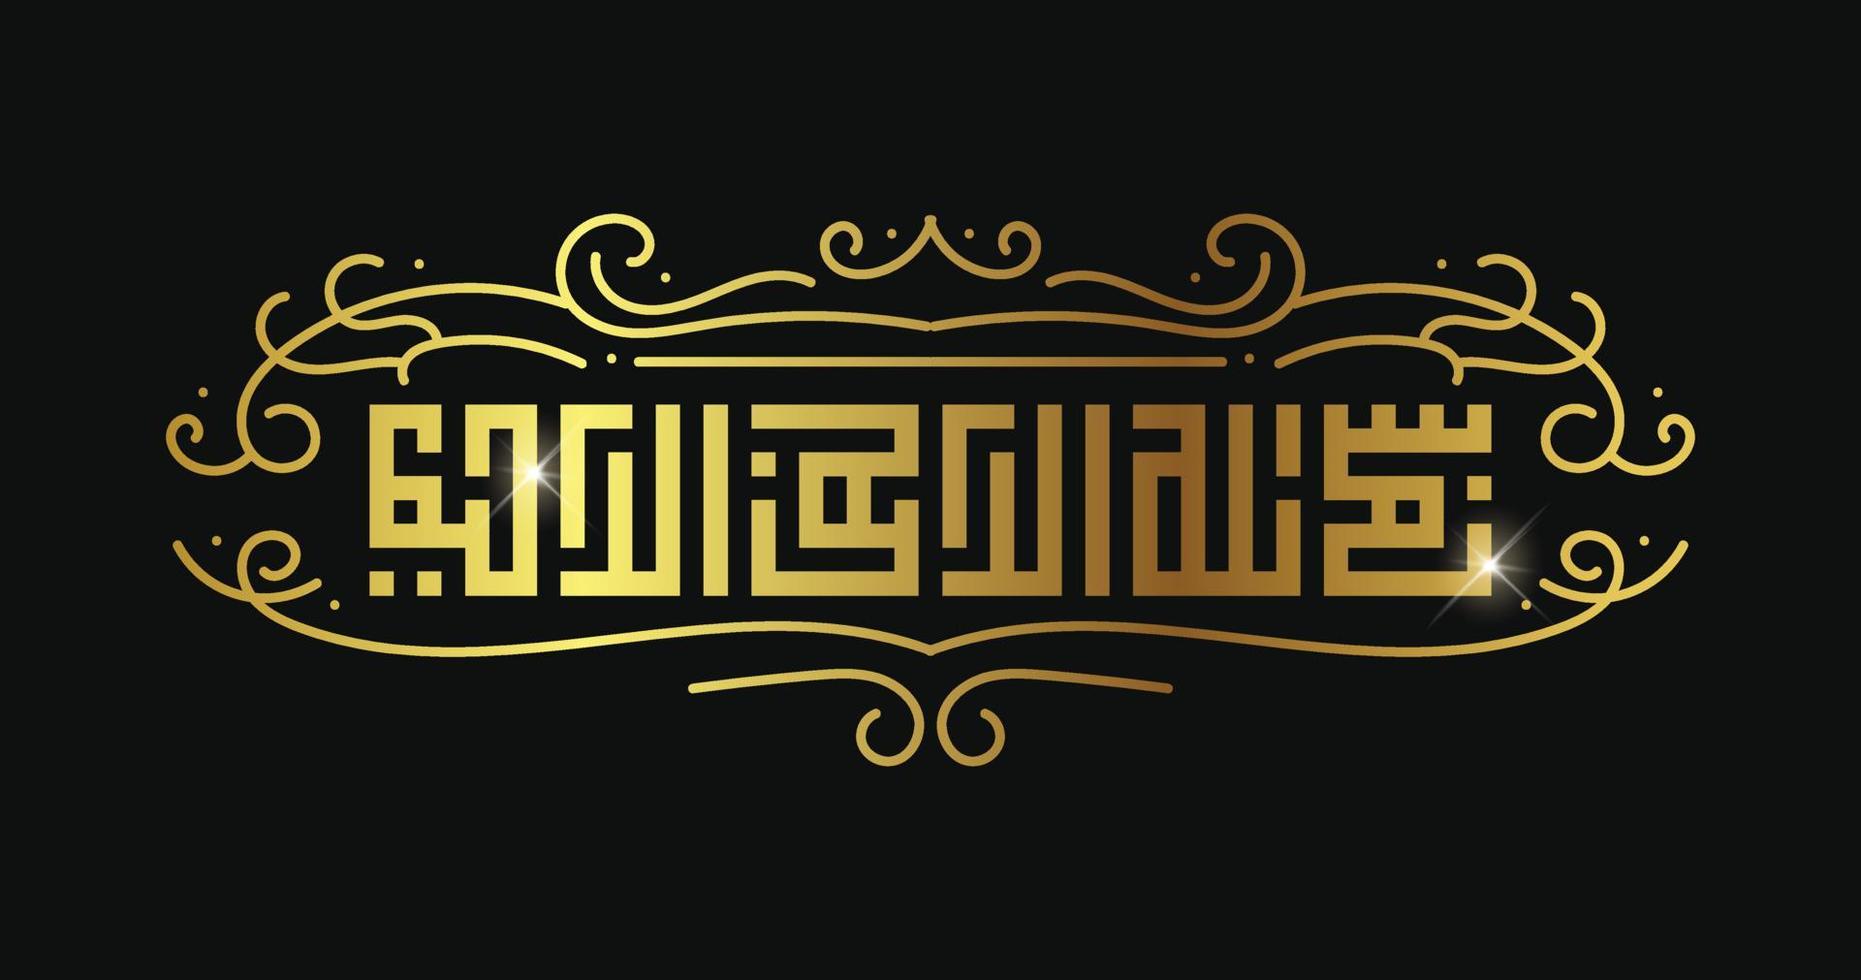 bismillah écrit en calligraphie islamique ou arabe. sens de bismillah, au nom d'allah, le compatissant, le miséricordieux vecteur